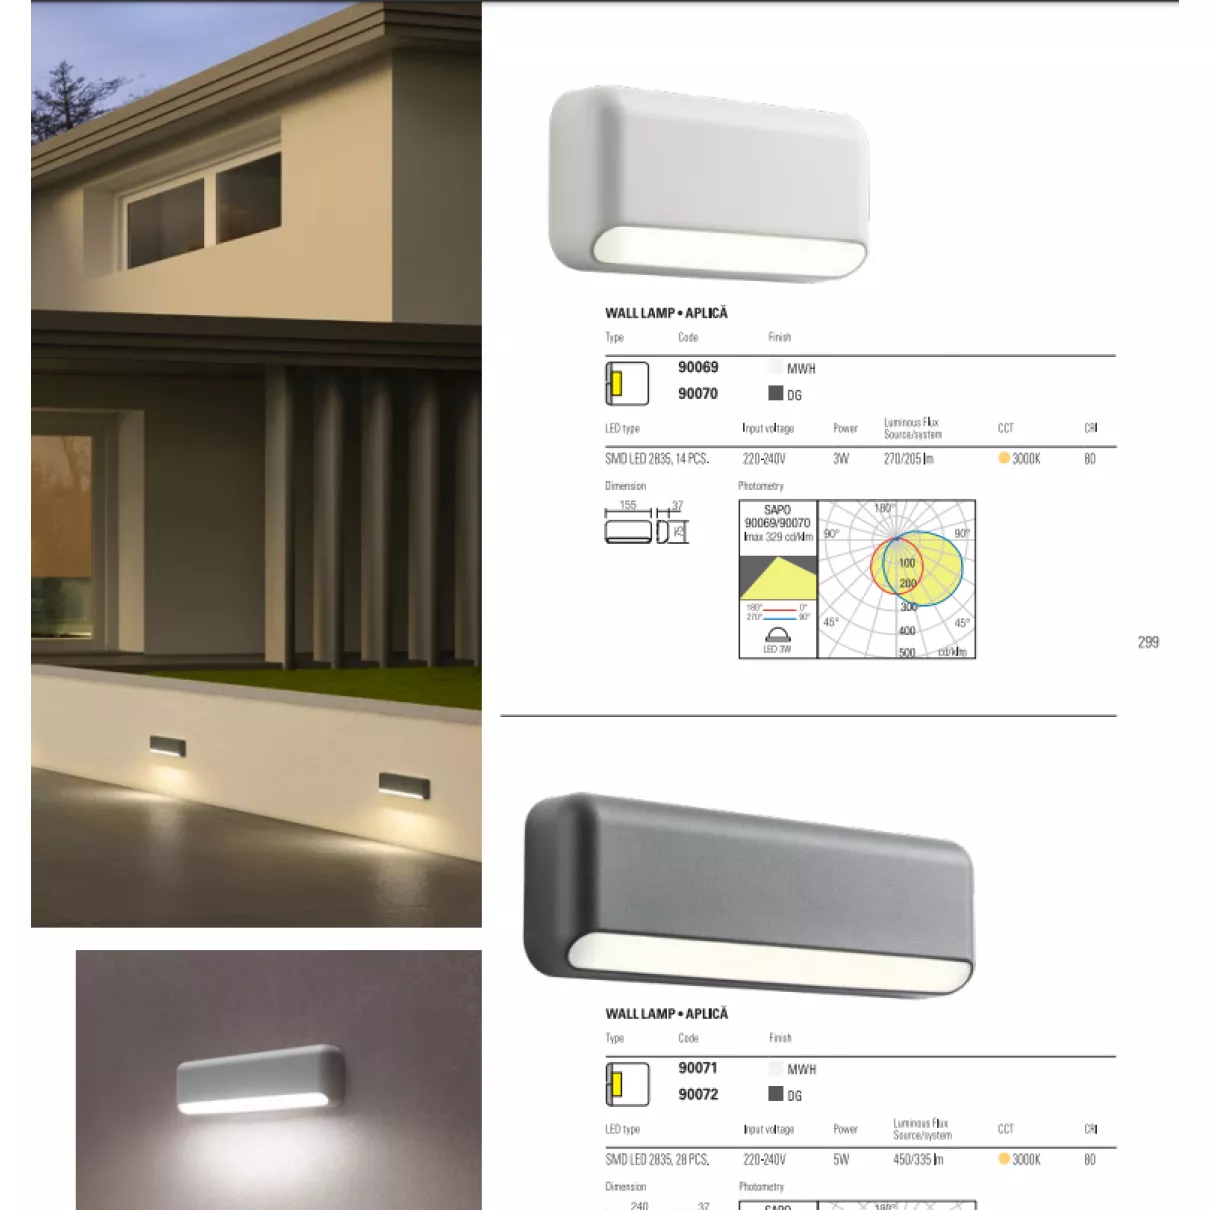 SAPO - Kültéri LED fali és lépcső világító, 450lm - Redo-90072